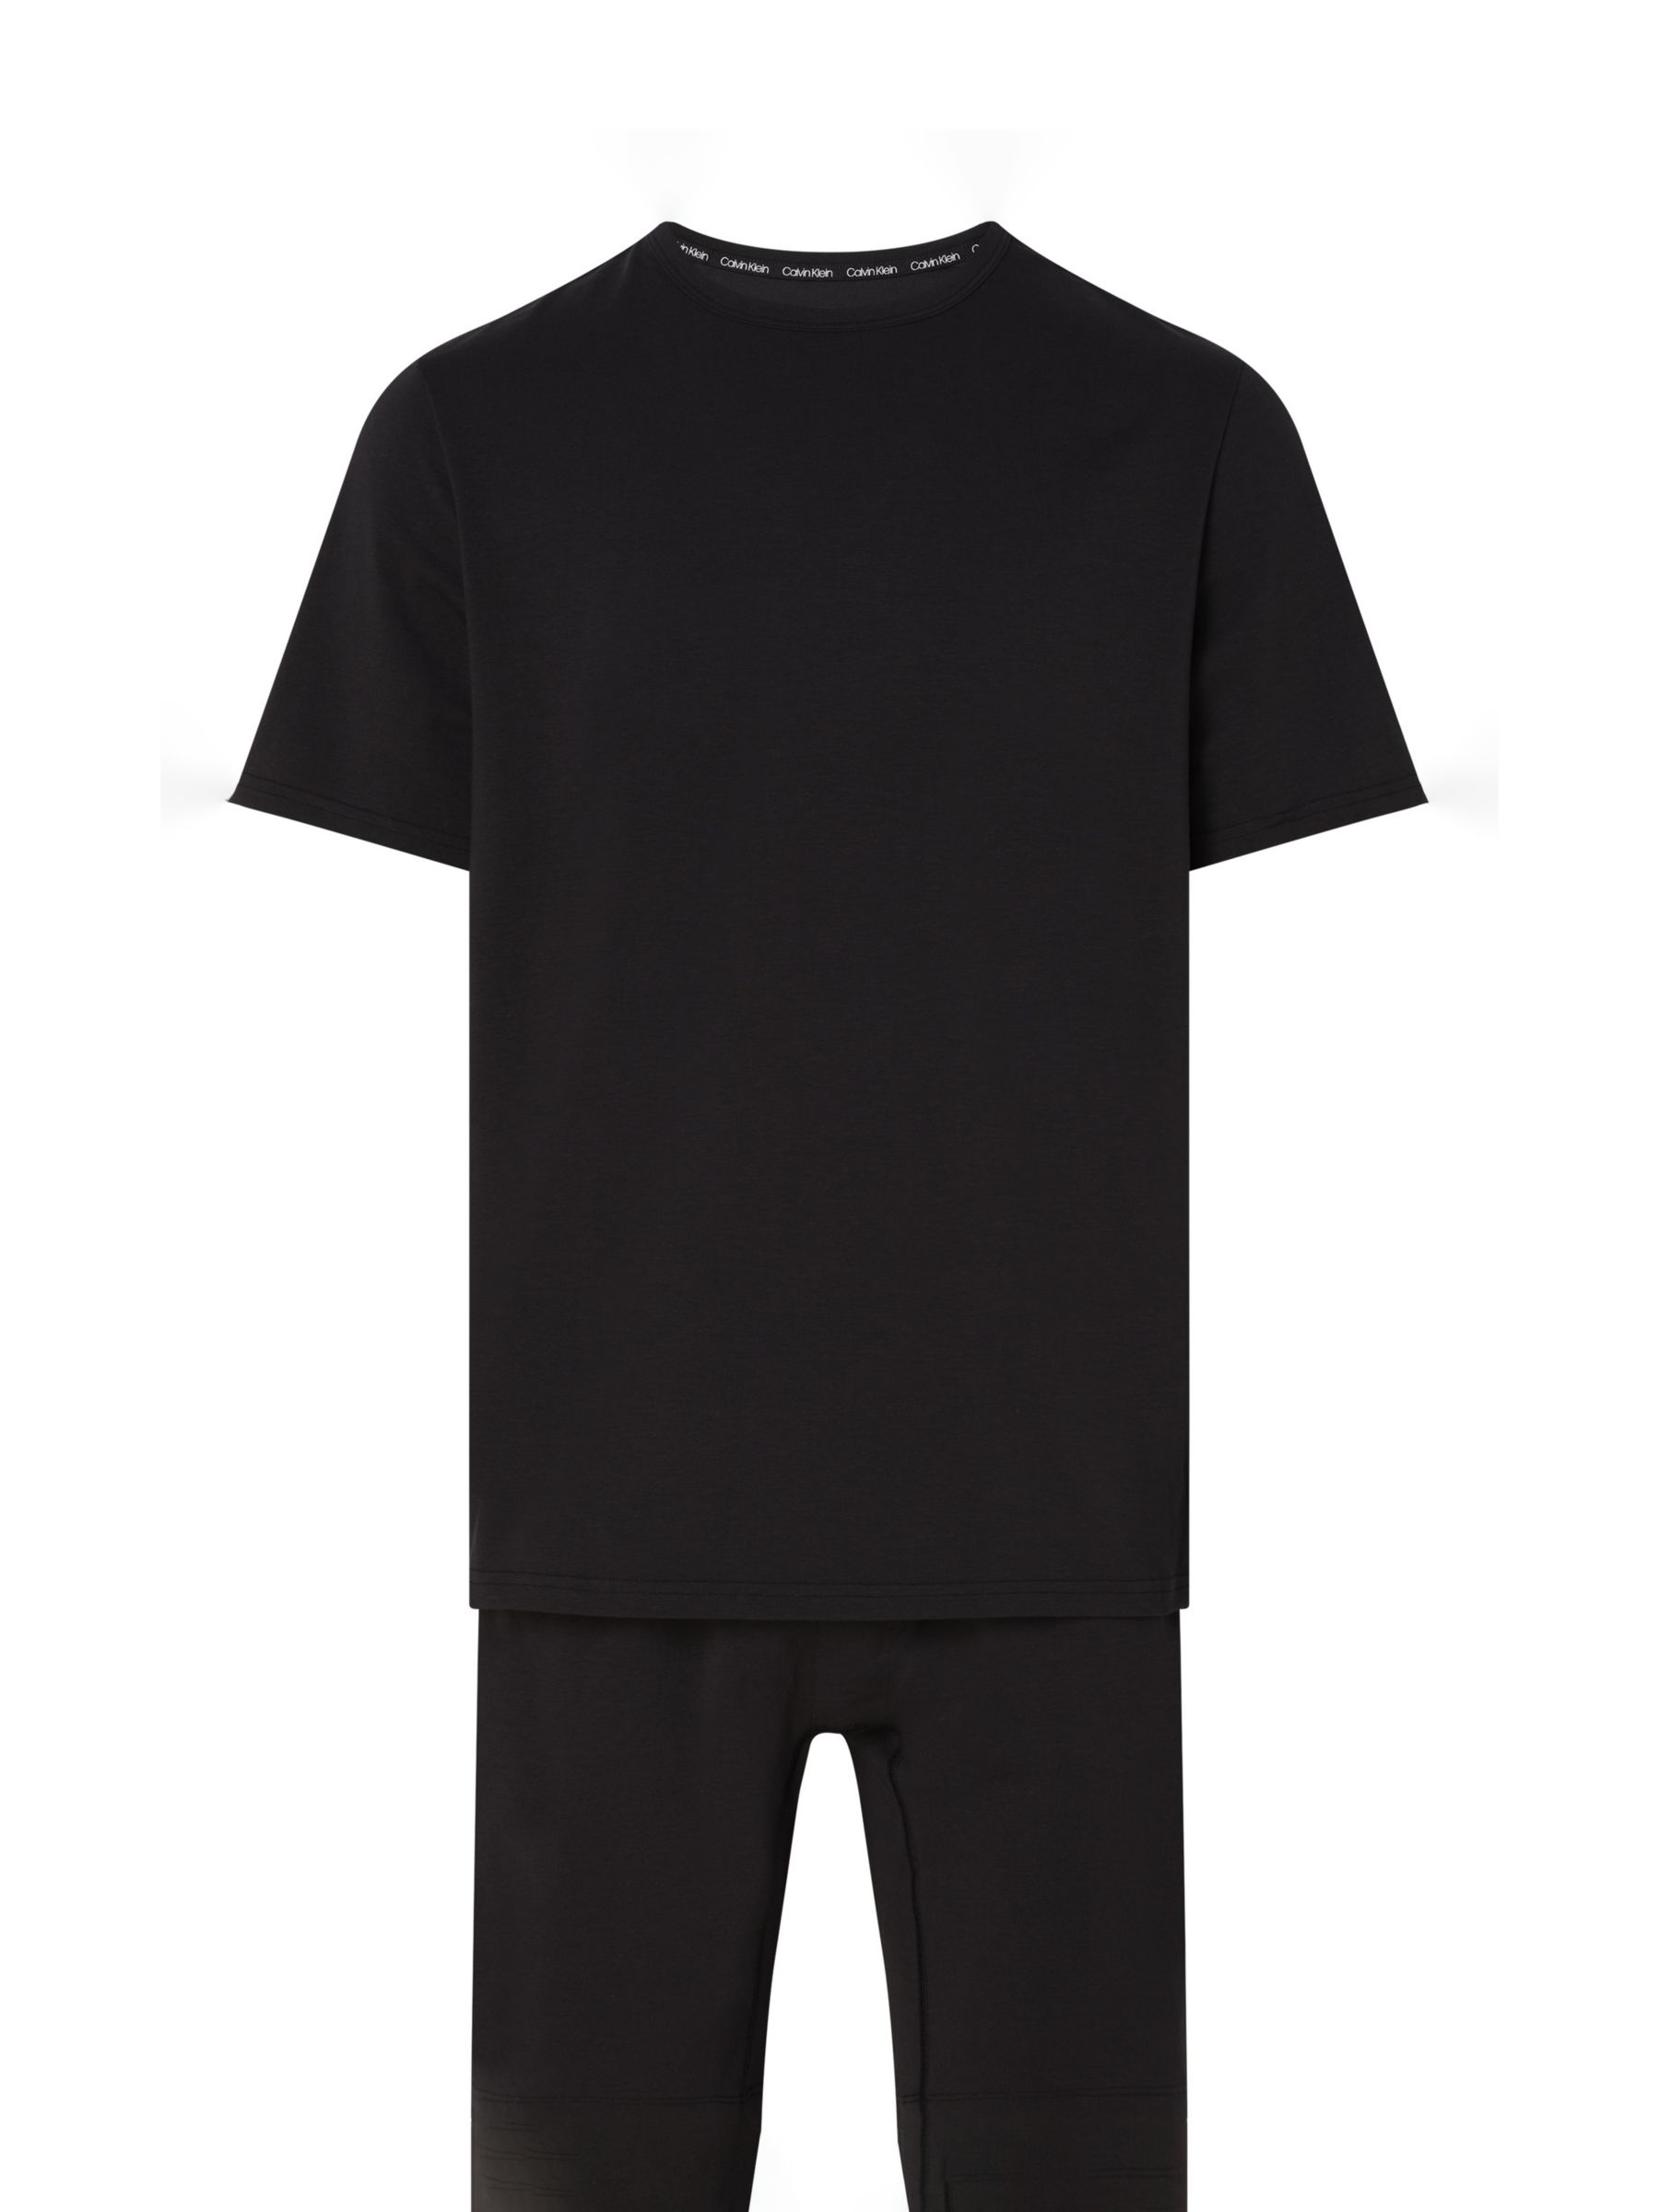 Calvin Klein Shorts Pyjama Set, Black at John Lewis & Partners